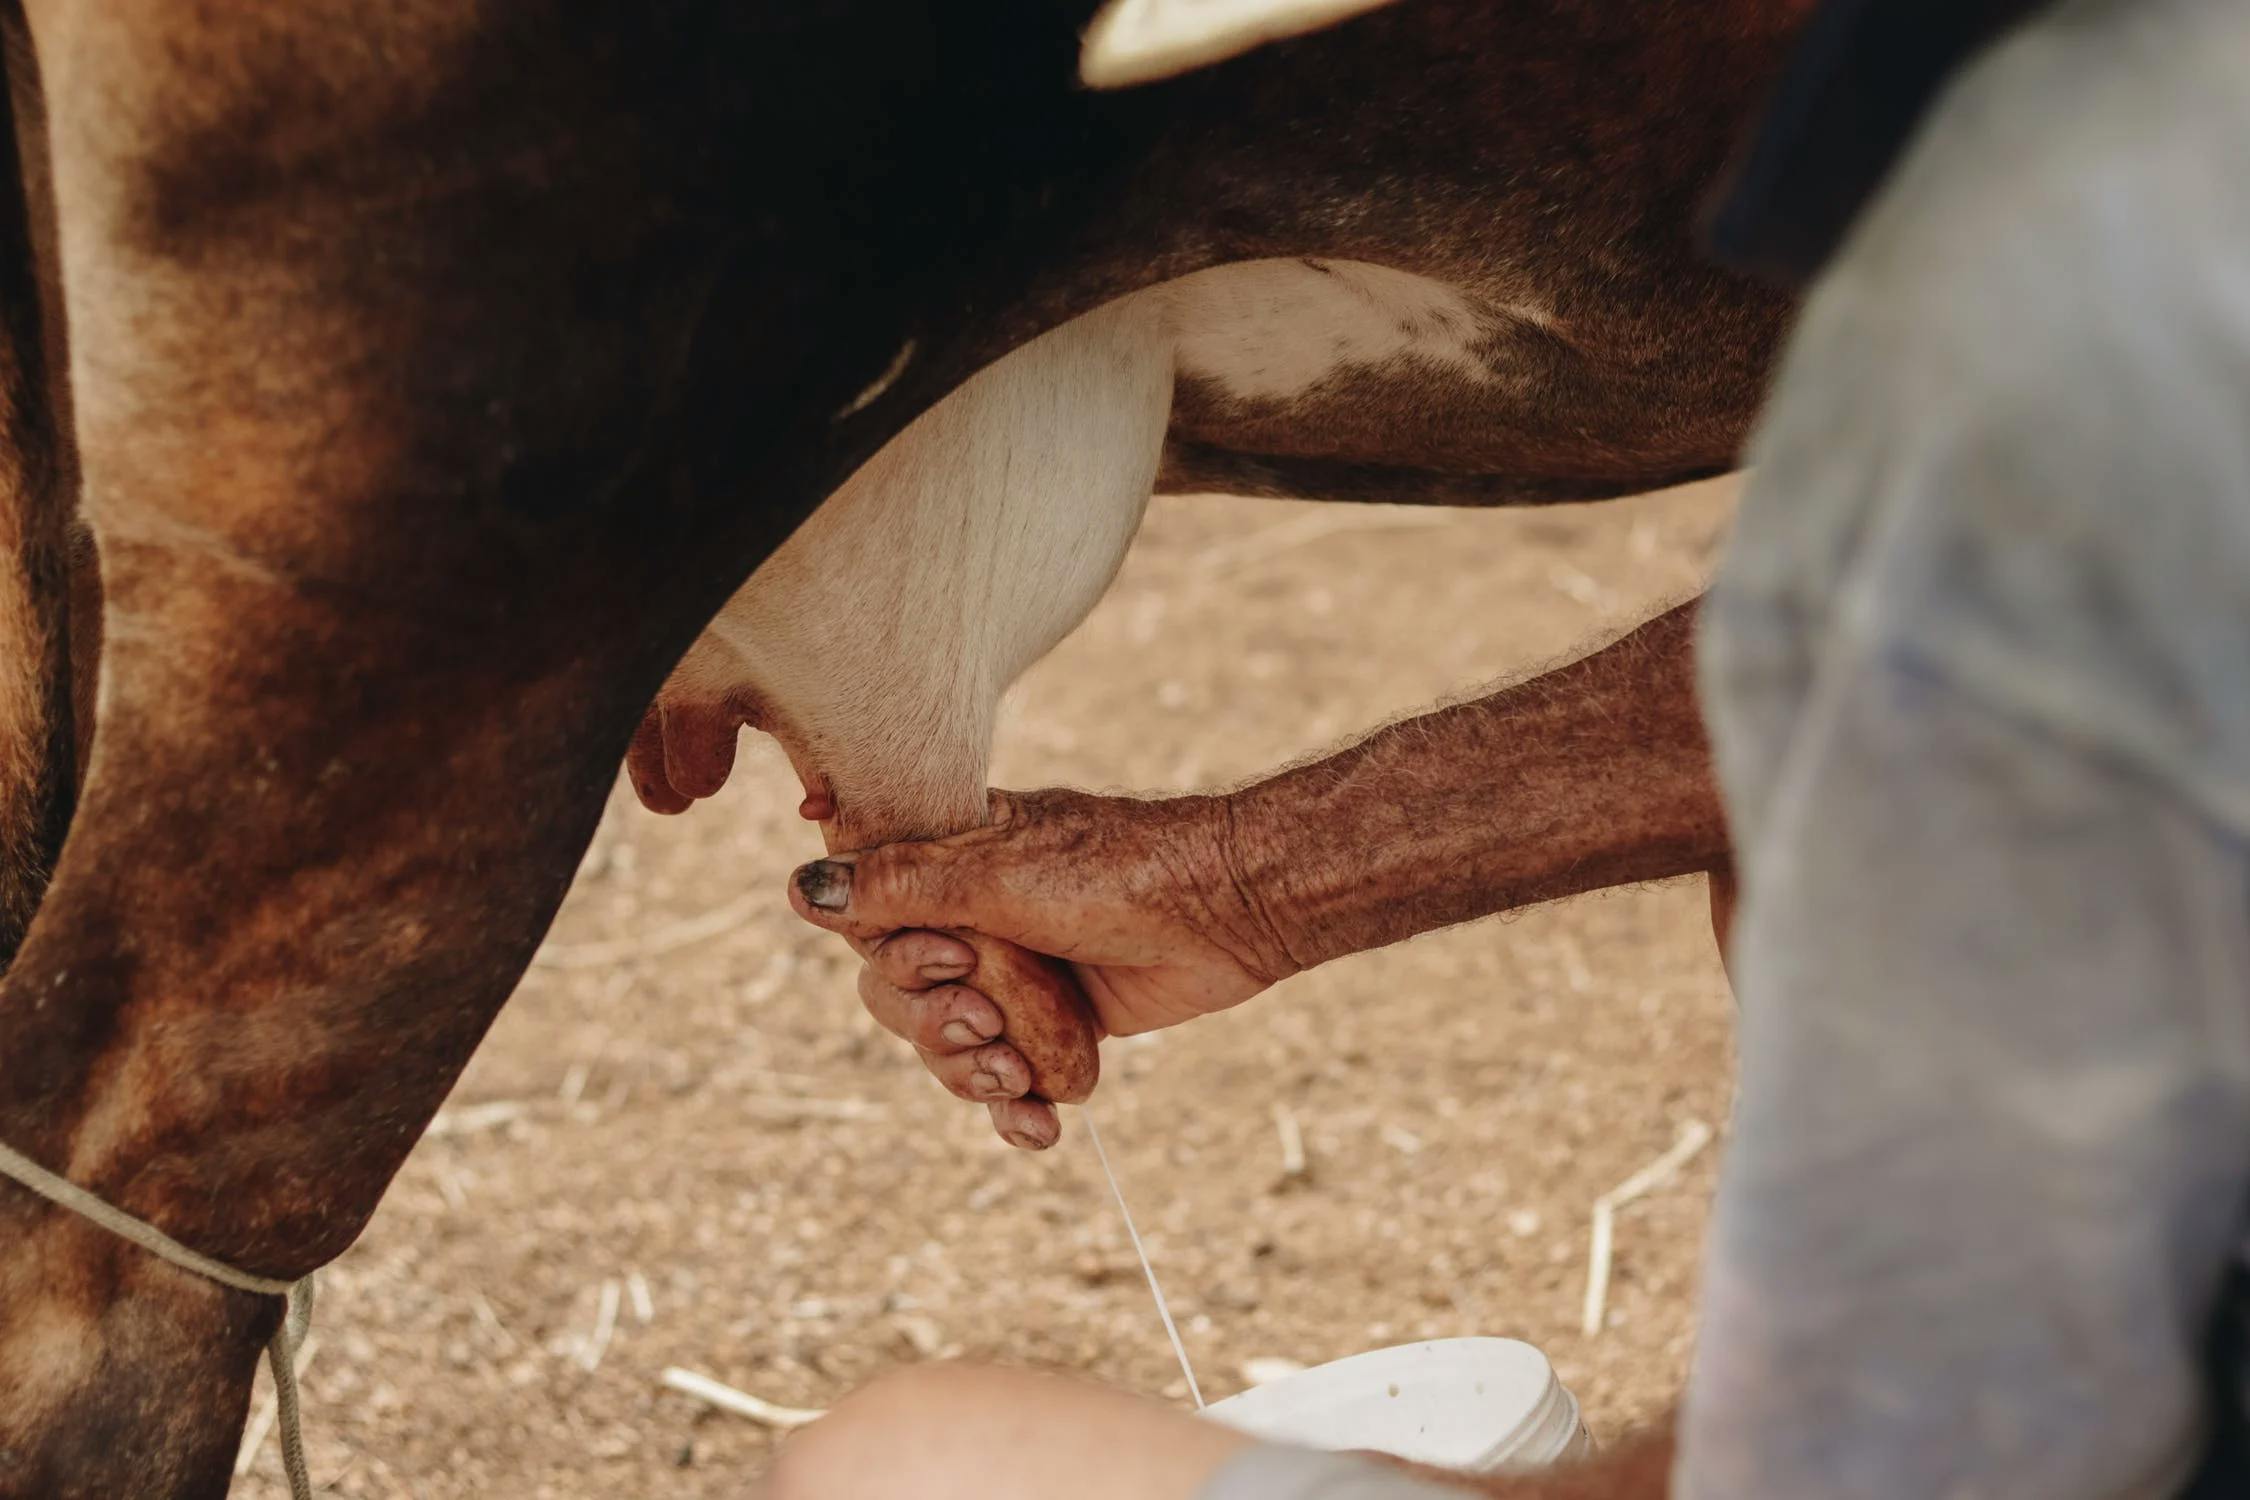 Tout savoir sur le lait de soja : bienfaits et précautions - La Fourche